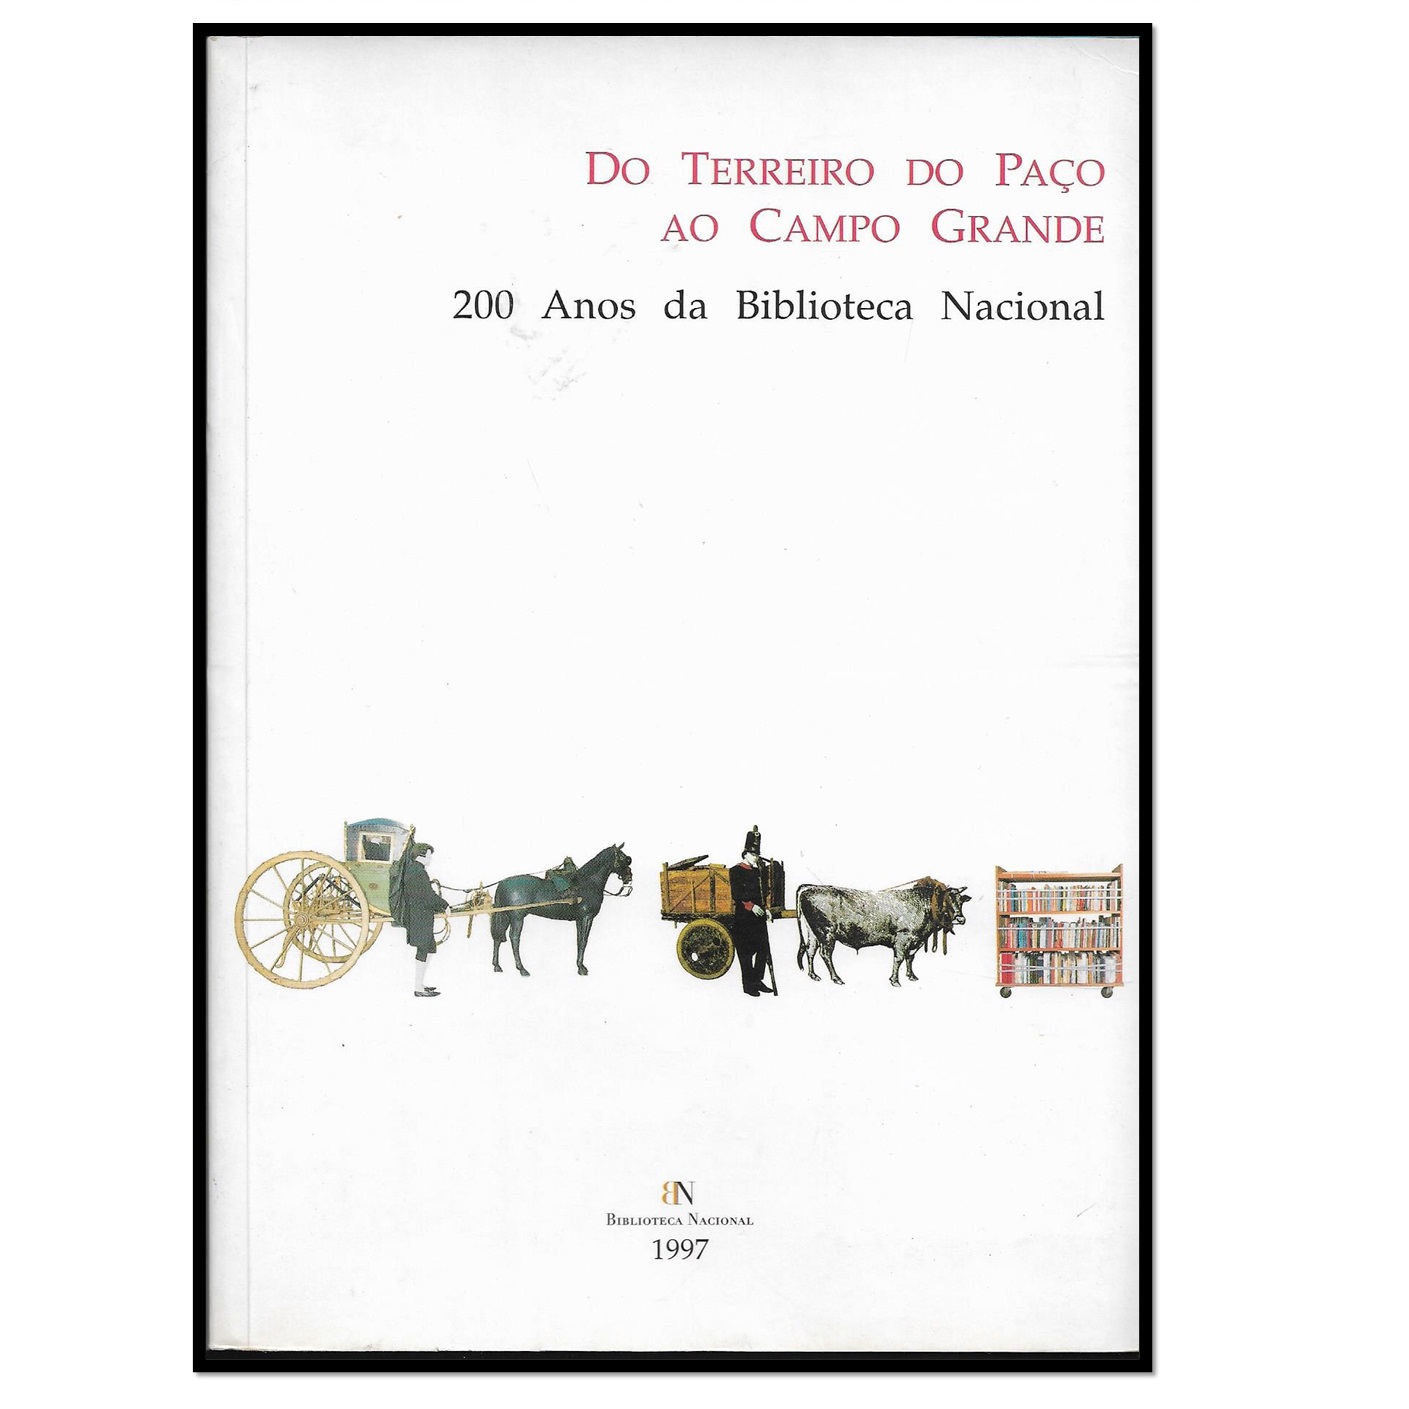 DO TERREIRO DO PAÇO AO CAMPO GRANDE: 200 anos da Biblioteca Nacional